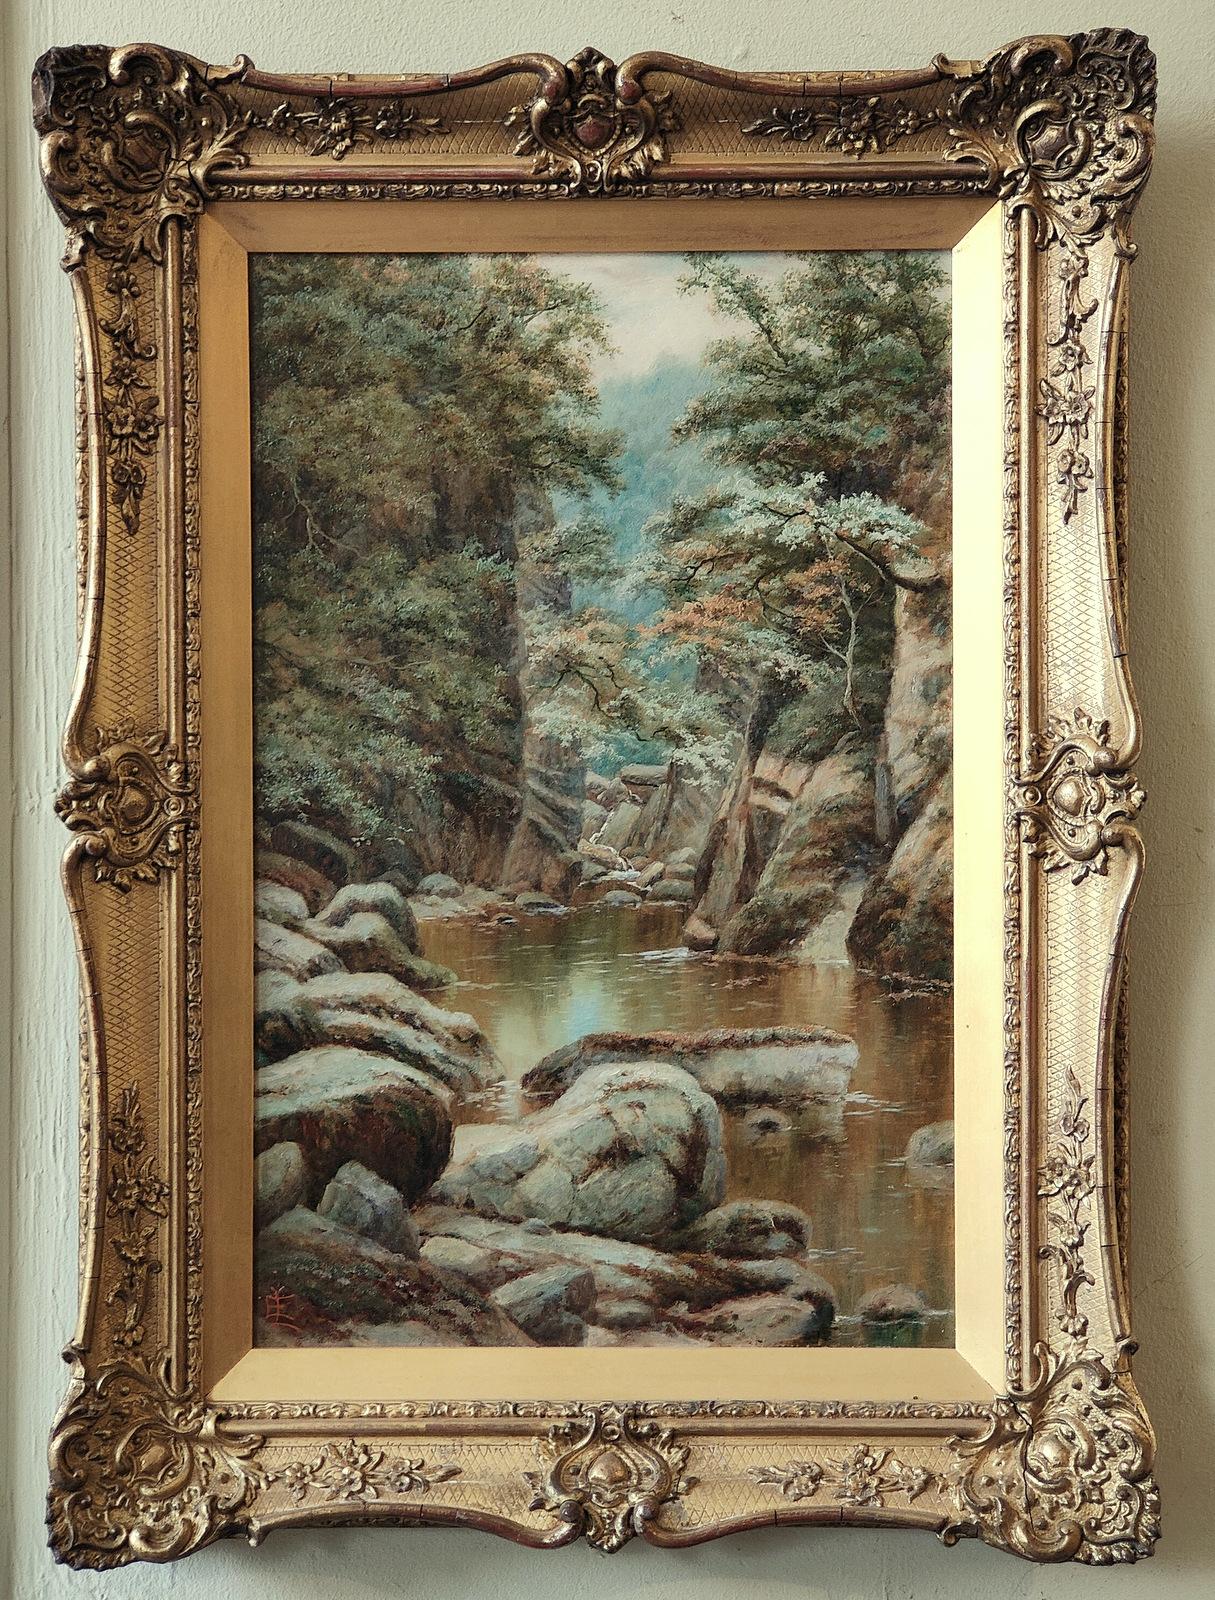 Ölgemälde von Edgar Longstaff  "Fairy Glen" 1849 -1912 Er war ein Maler rustikaler Landschaften und stimmungsvoller Hochlandansichten, die in der R.A. Dublin und Birmingham ausgestellt wurden. Öl auf Leinwand. Beschriftet Signiert und im